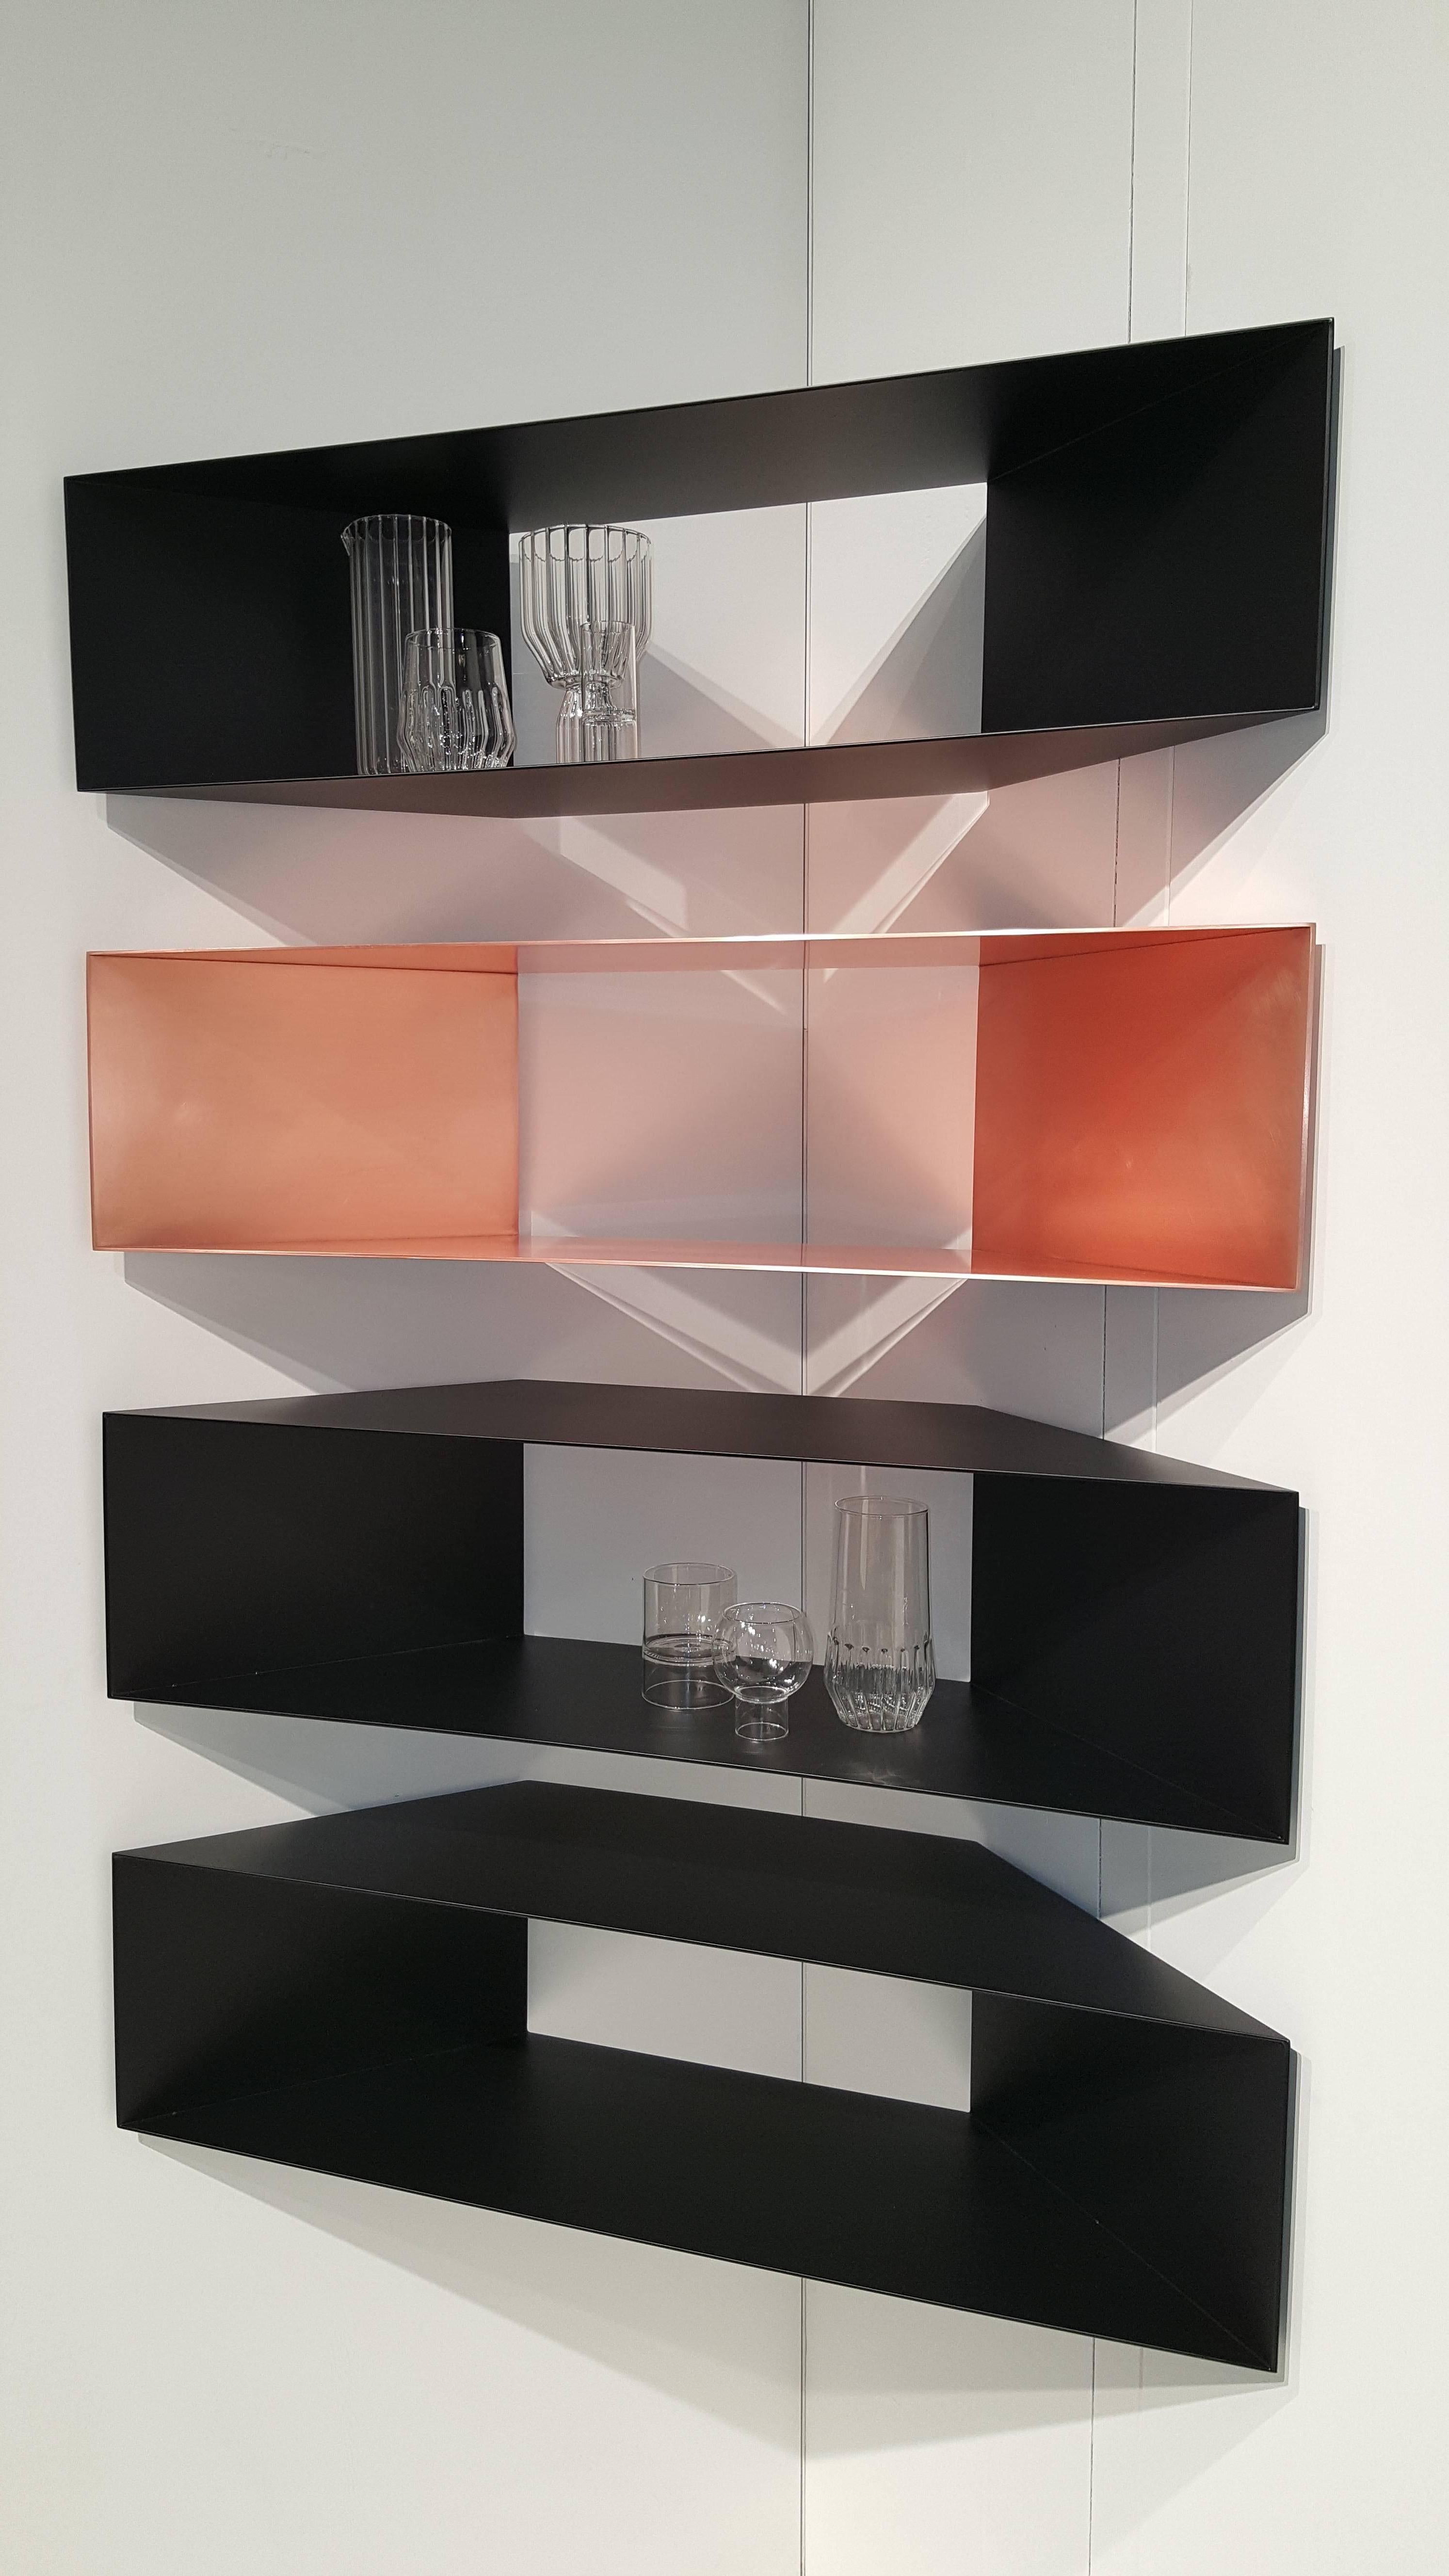 Cette étagère d'angle sculpturale contemporaine en métal cuivré est parfaite pour tout espace, qu'il s'agisse d'un salon, d'un bureau ou d'une salle de bain.

En stock : Ces étagères Minimalist en cuivre, installées individuellement ou en série,